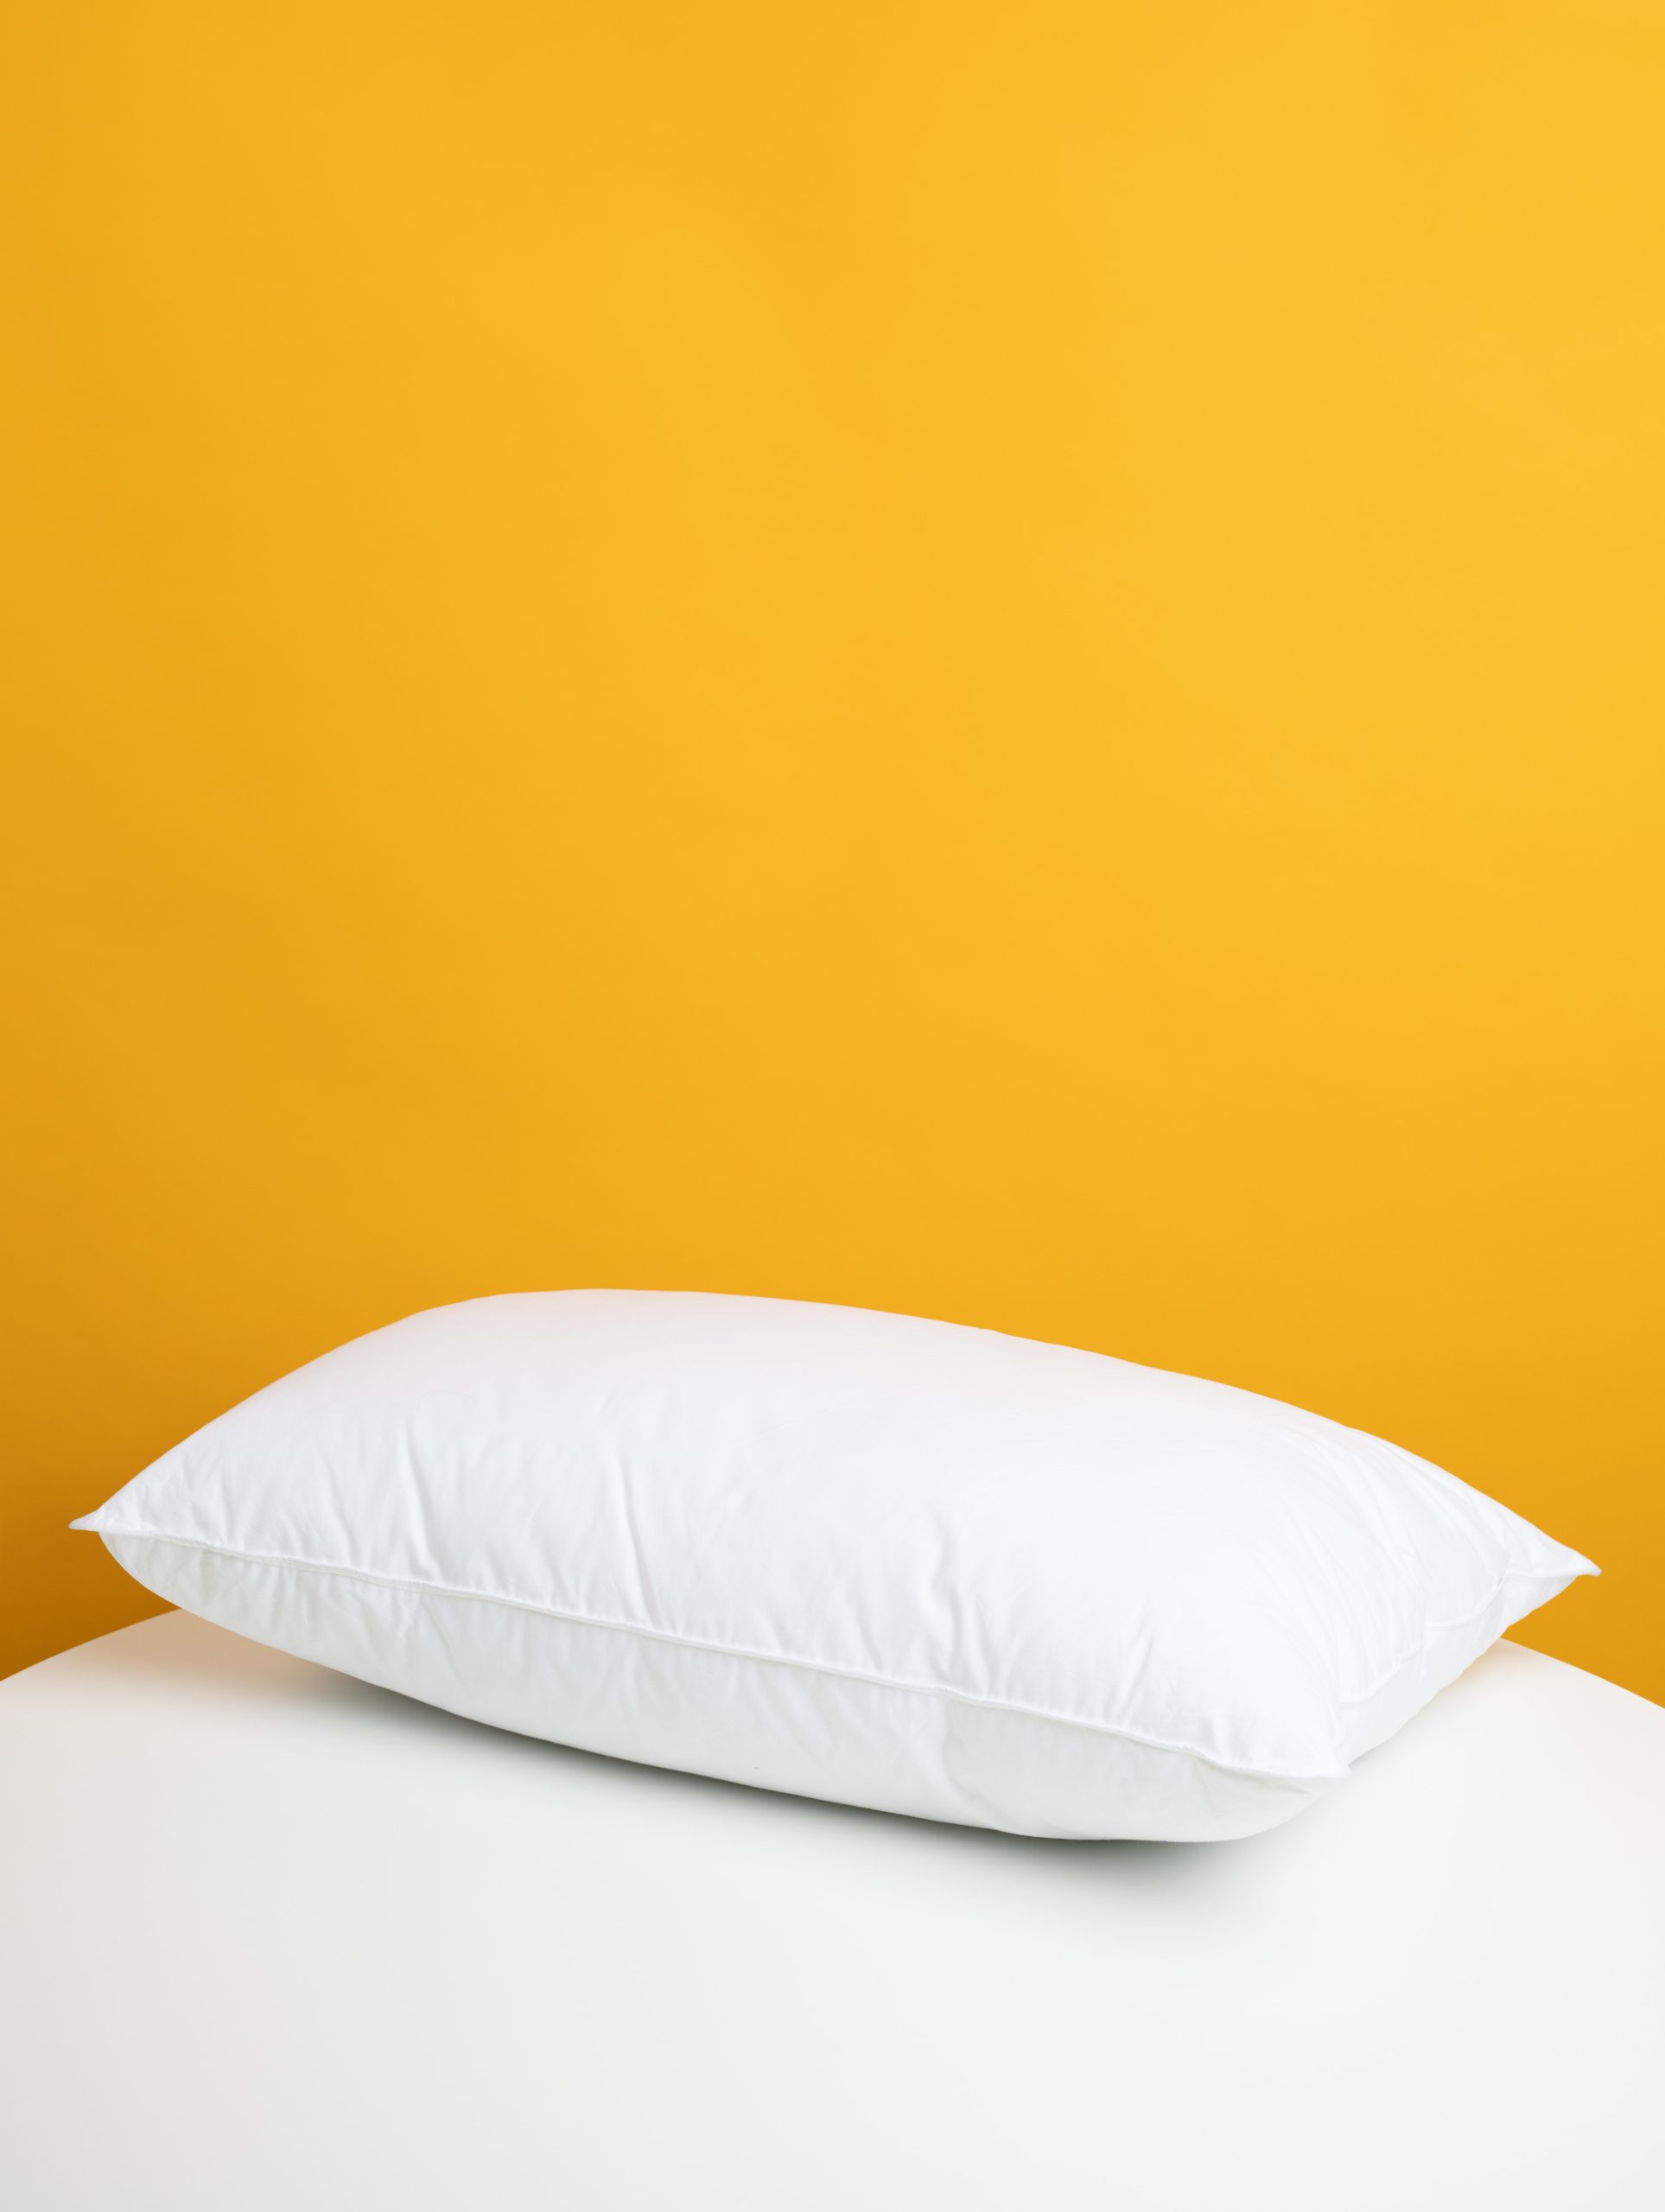 Columna Activa :: La importancia al elegir una almohada